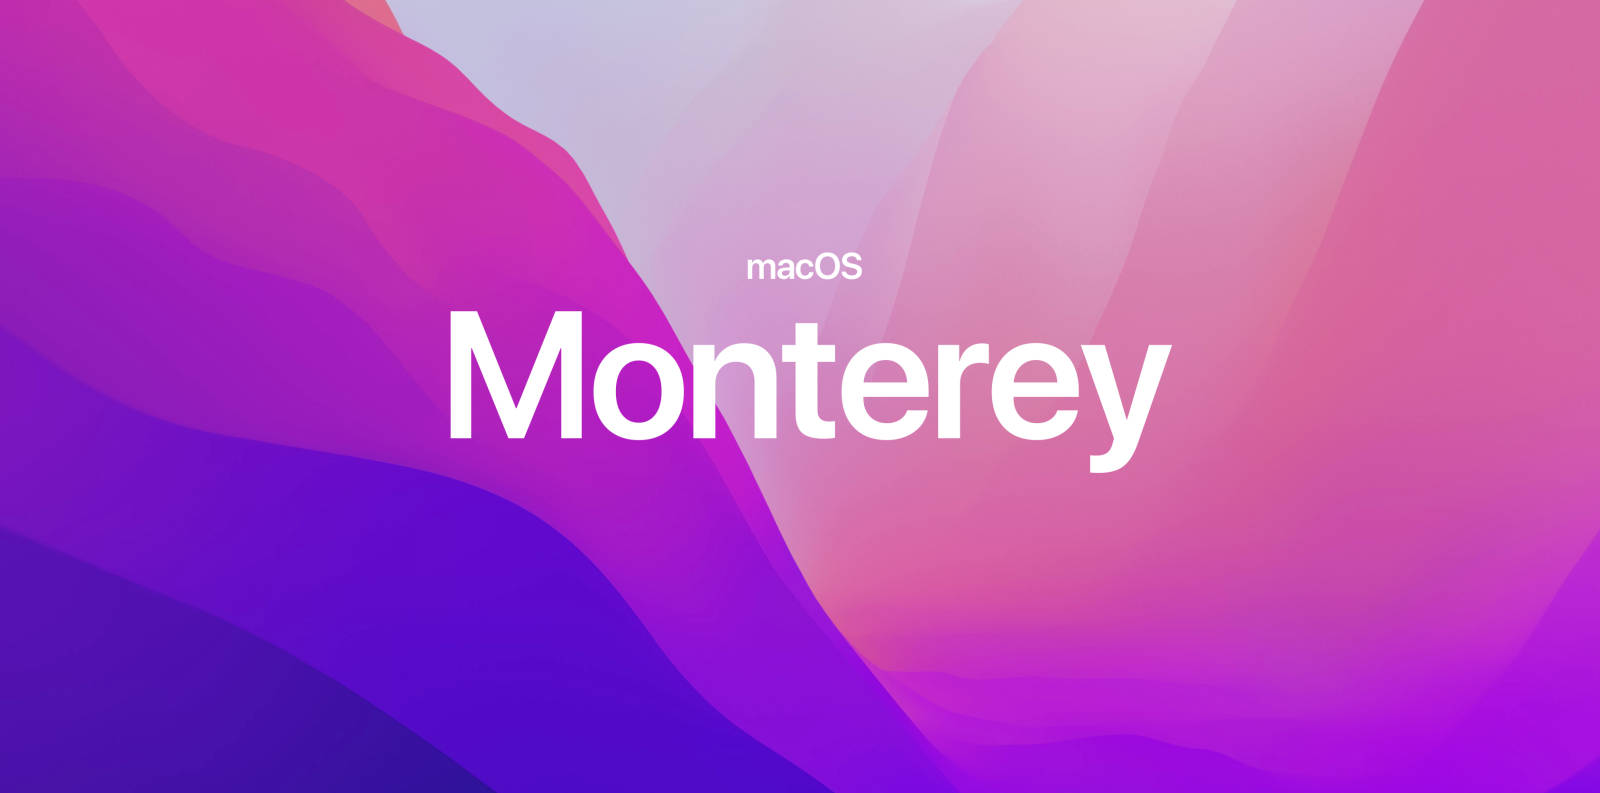 Alps MacOS Monterey Wallpaper